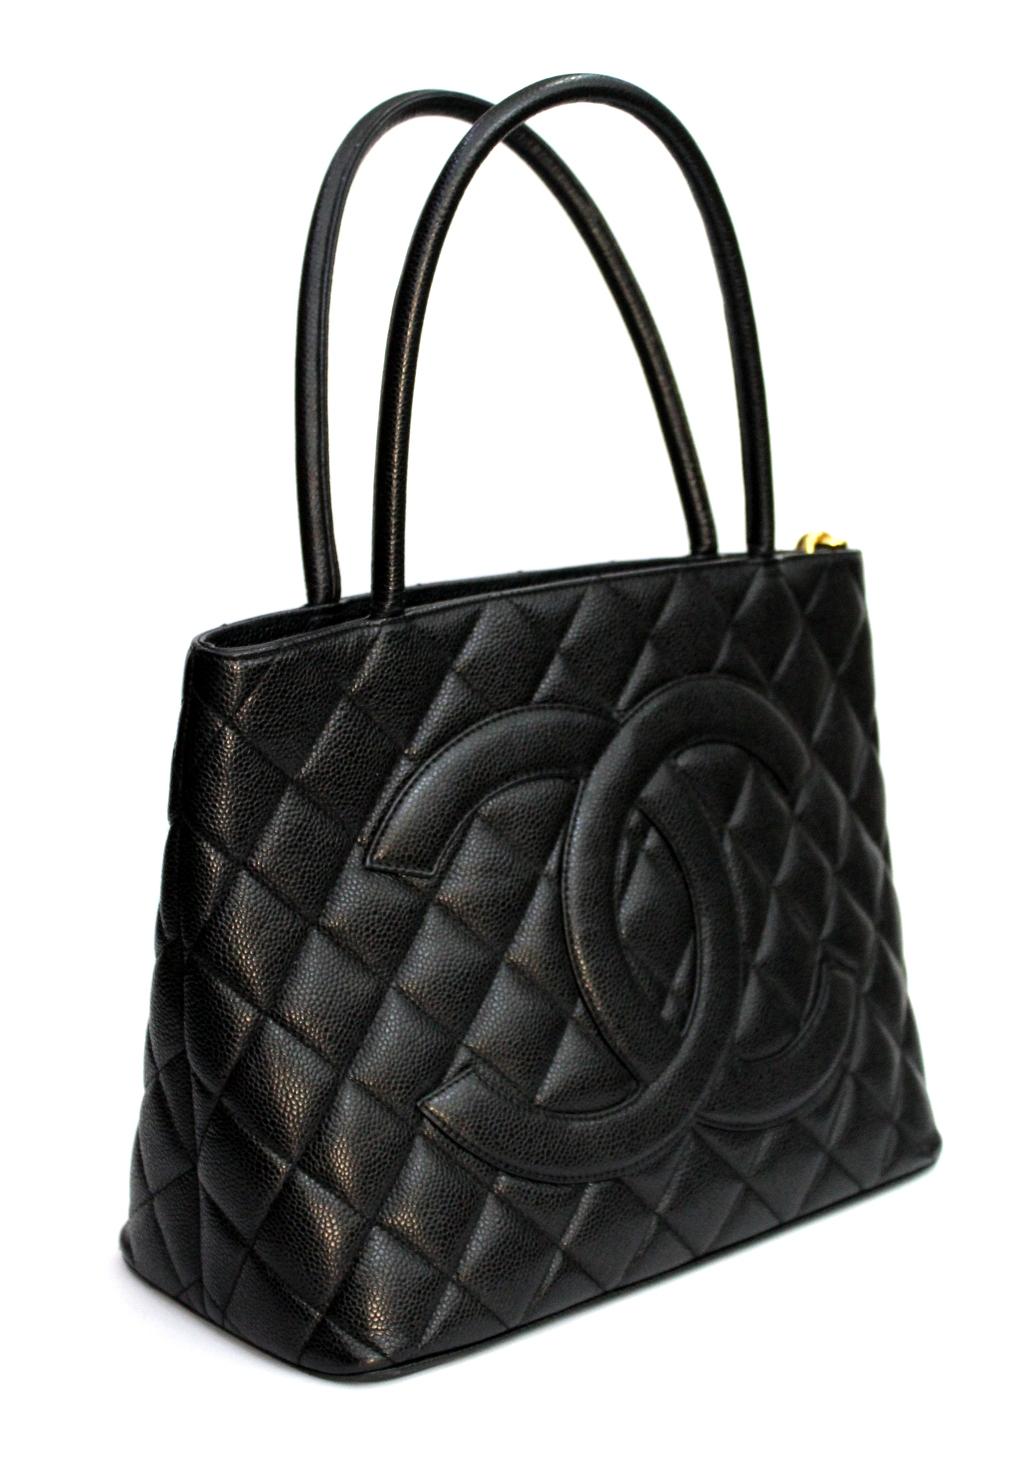 Chanel Black Leather Medallion Bag 1